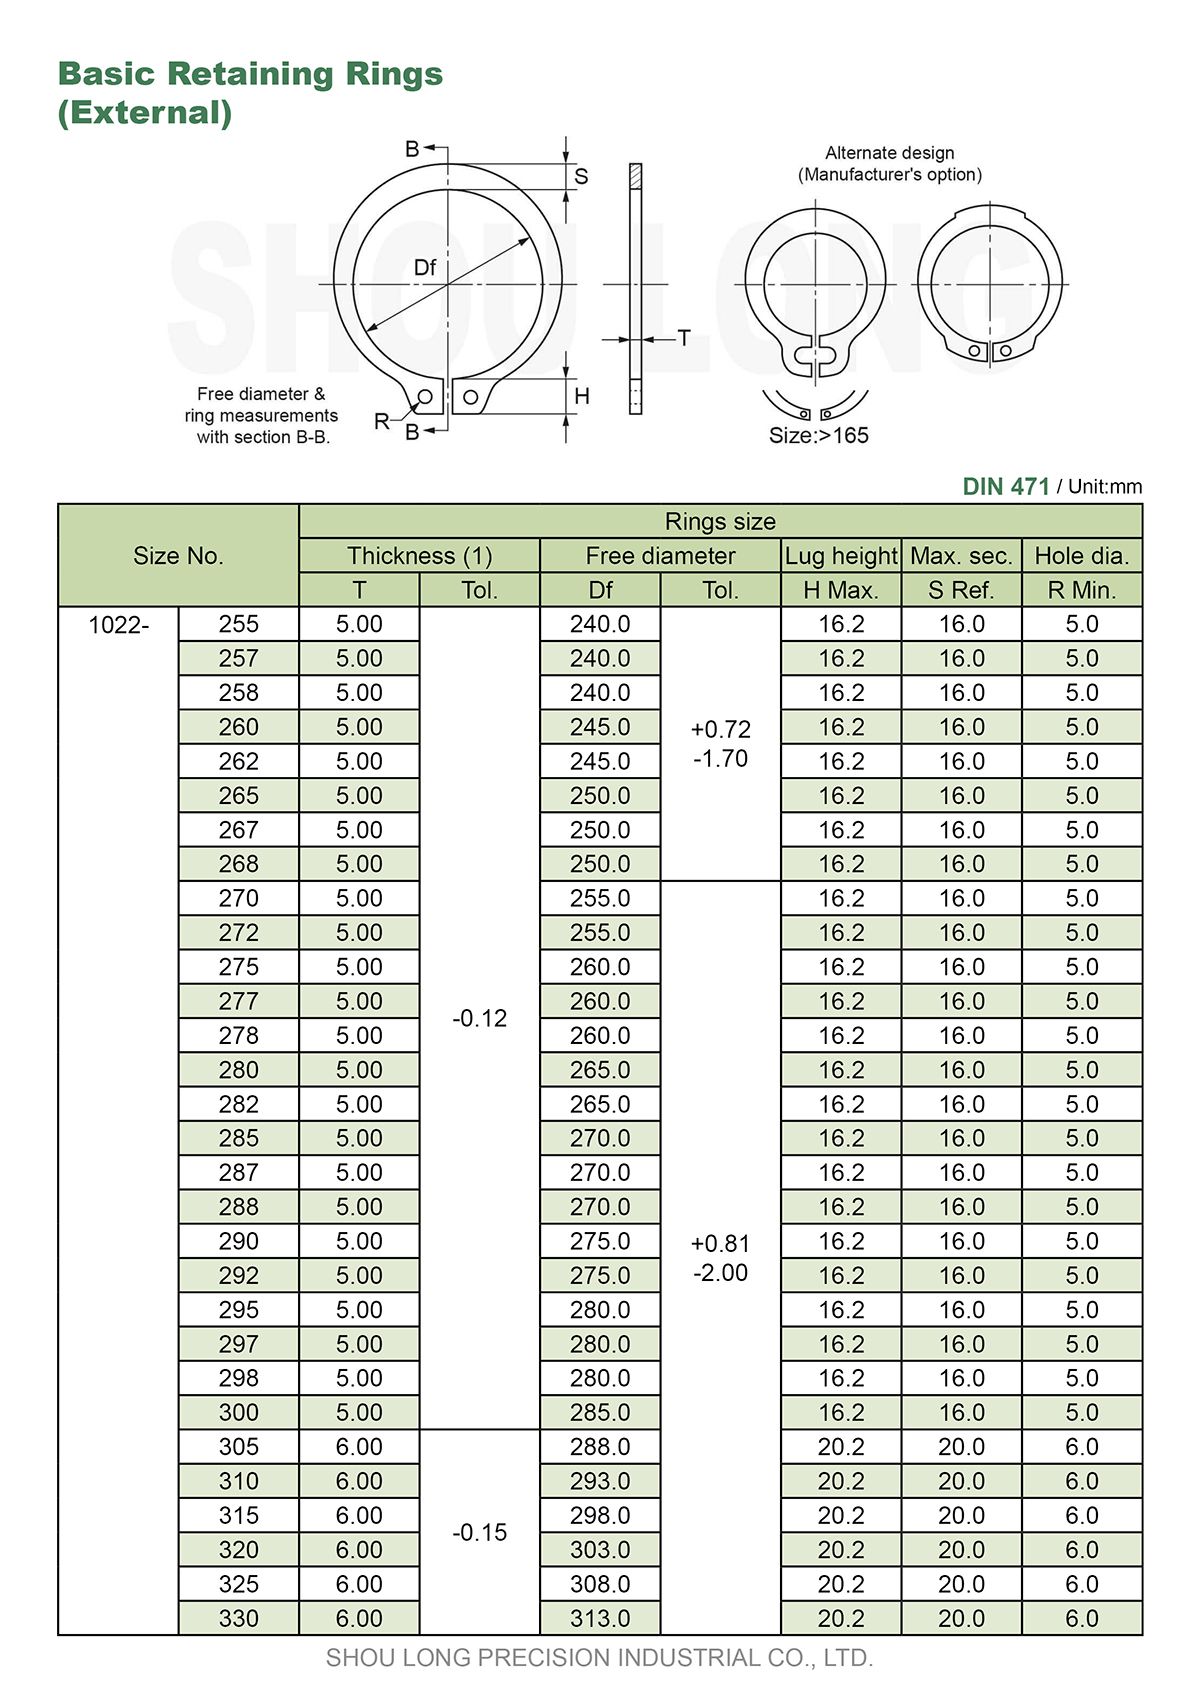 ข้อมูลของวงแหวนรัดพื้นฐานเมตริกสำหรับแกน DIN471-6